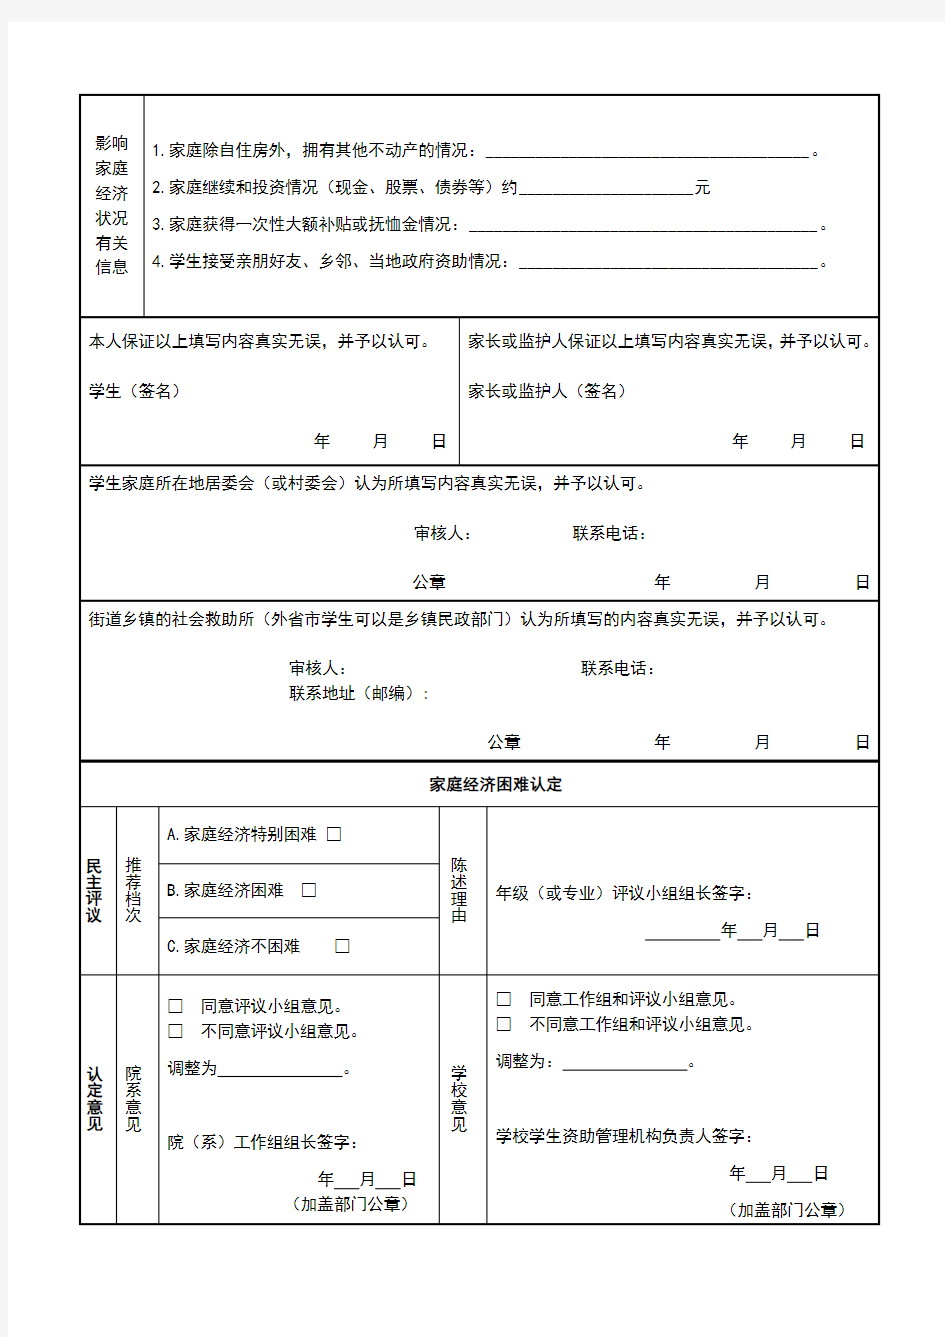 上海市高等学校家庭经济困难学生认定申请表(新)